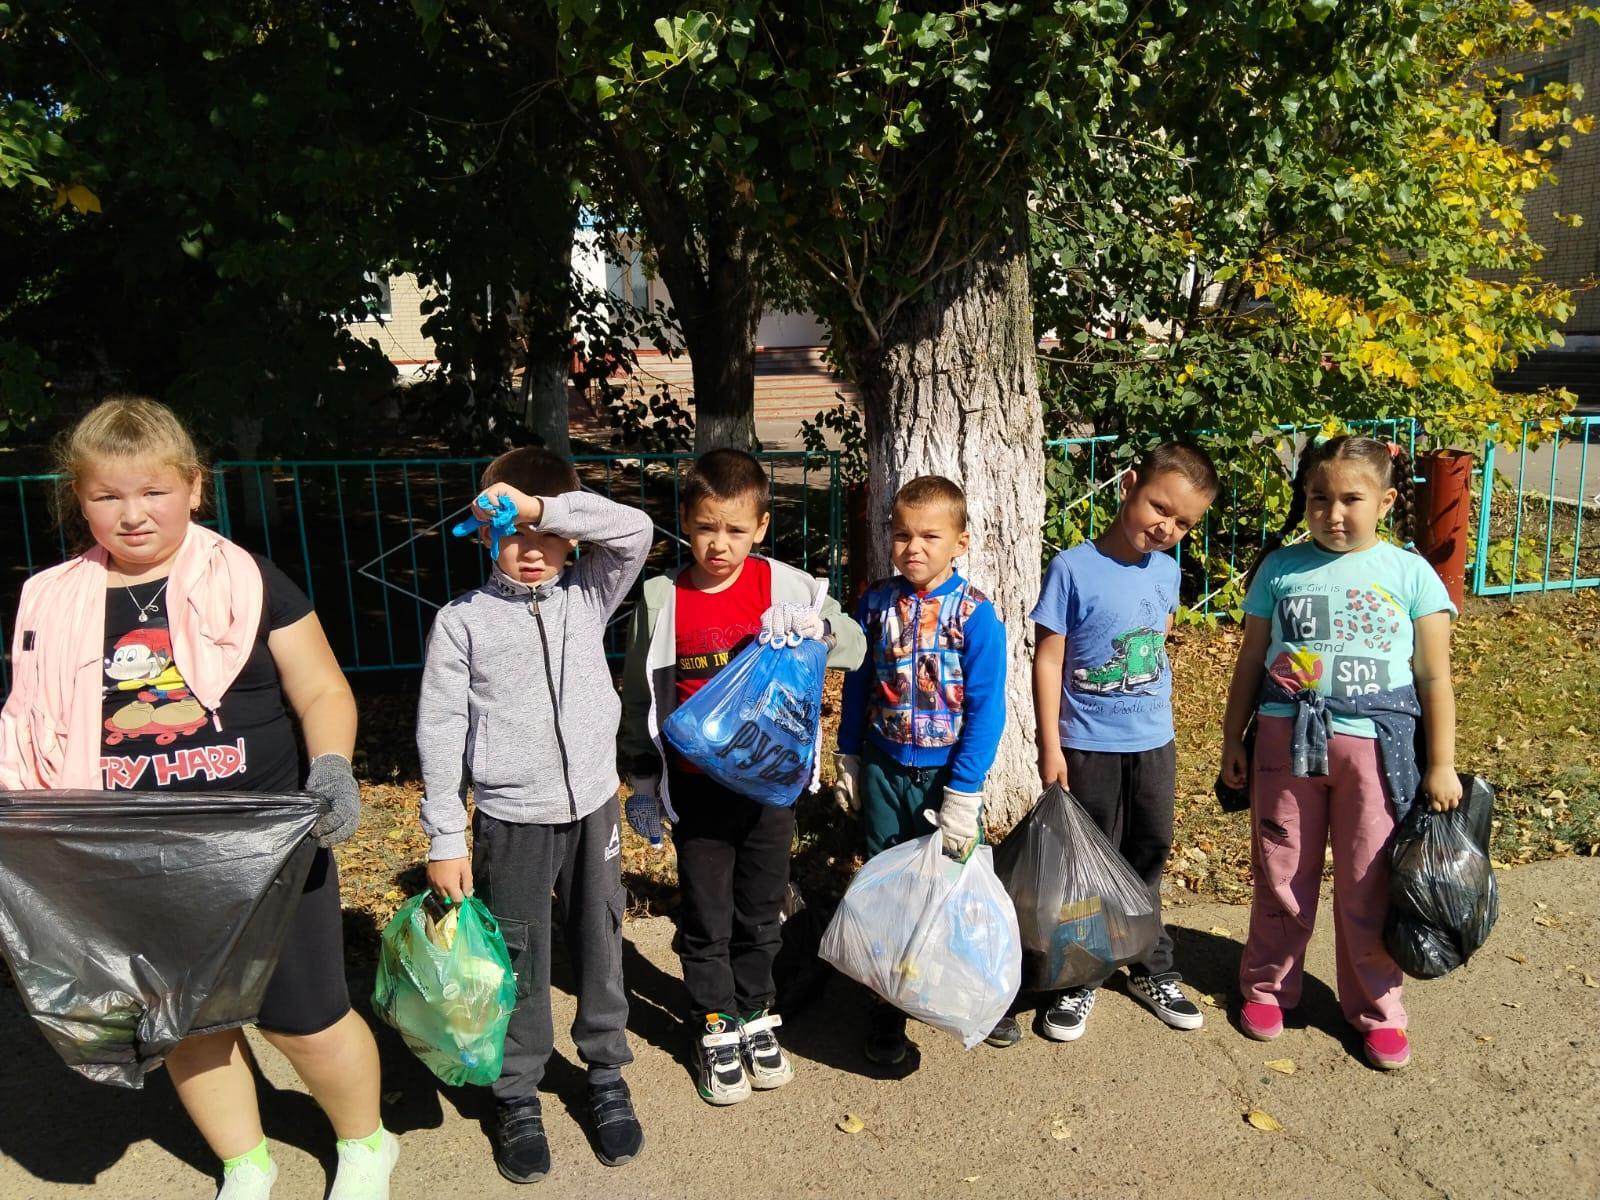 20 сентября первоклассники вышли на свой первый санитарный день по благоустройству территории школы. Ребята старательно собирали мусор на школьной спортивной площадке, клумбах и по периметру здания. Молодцы!.